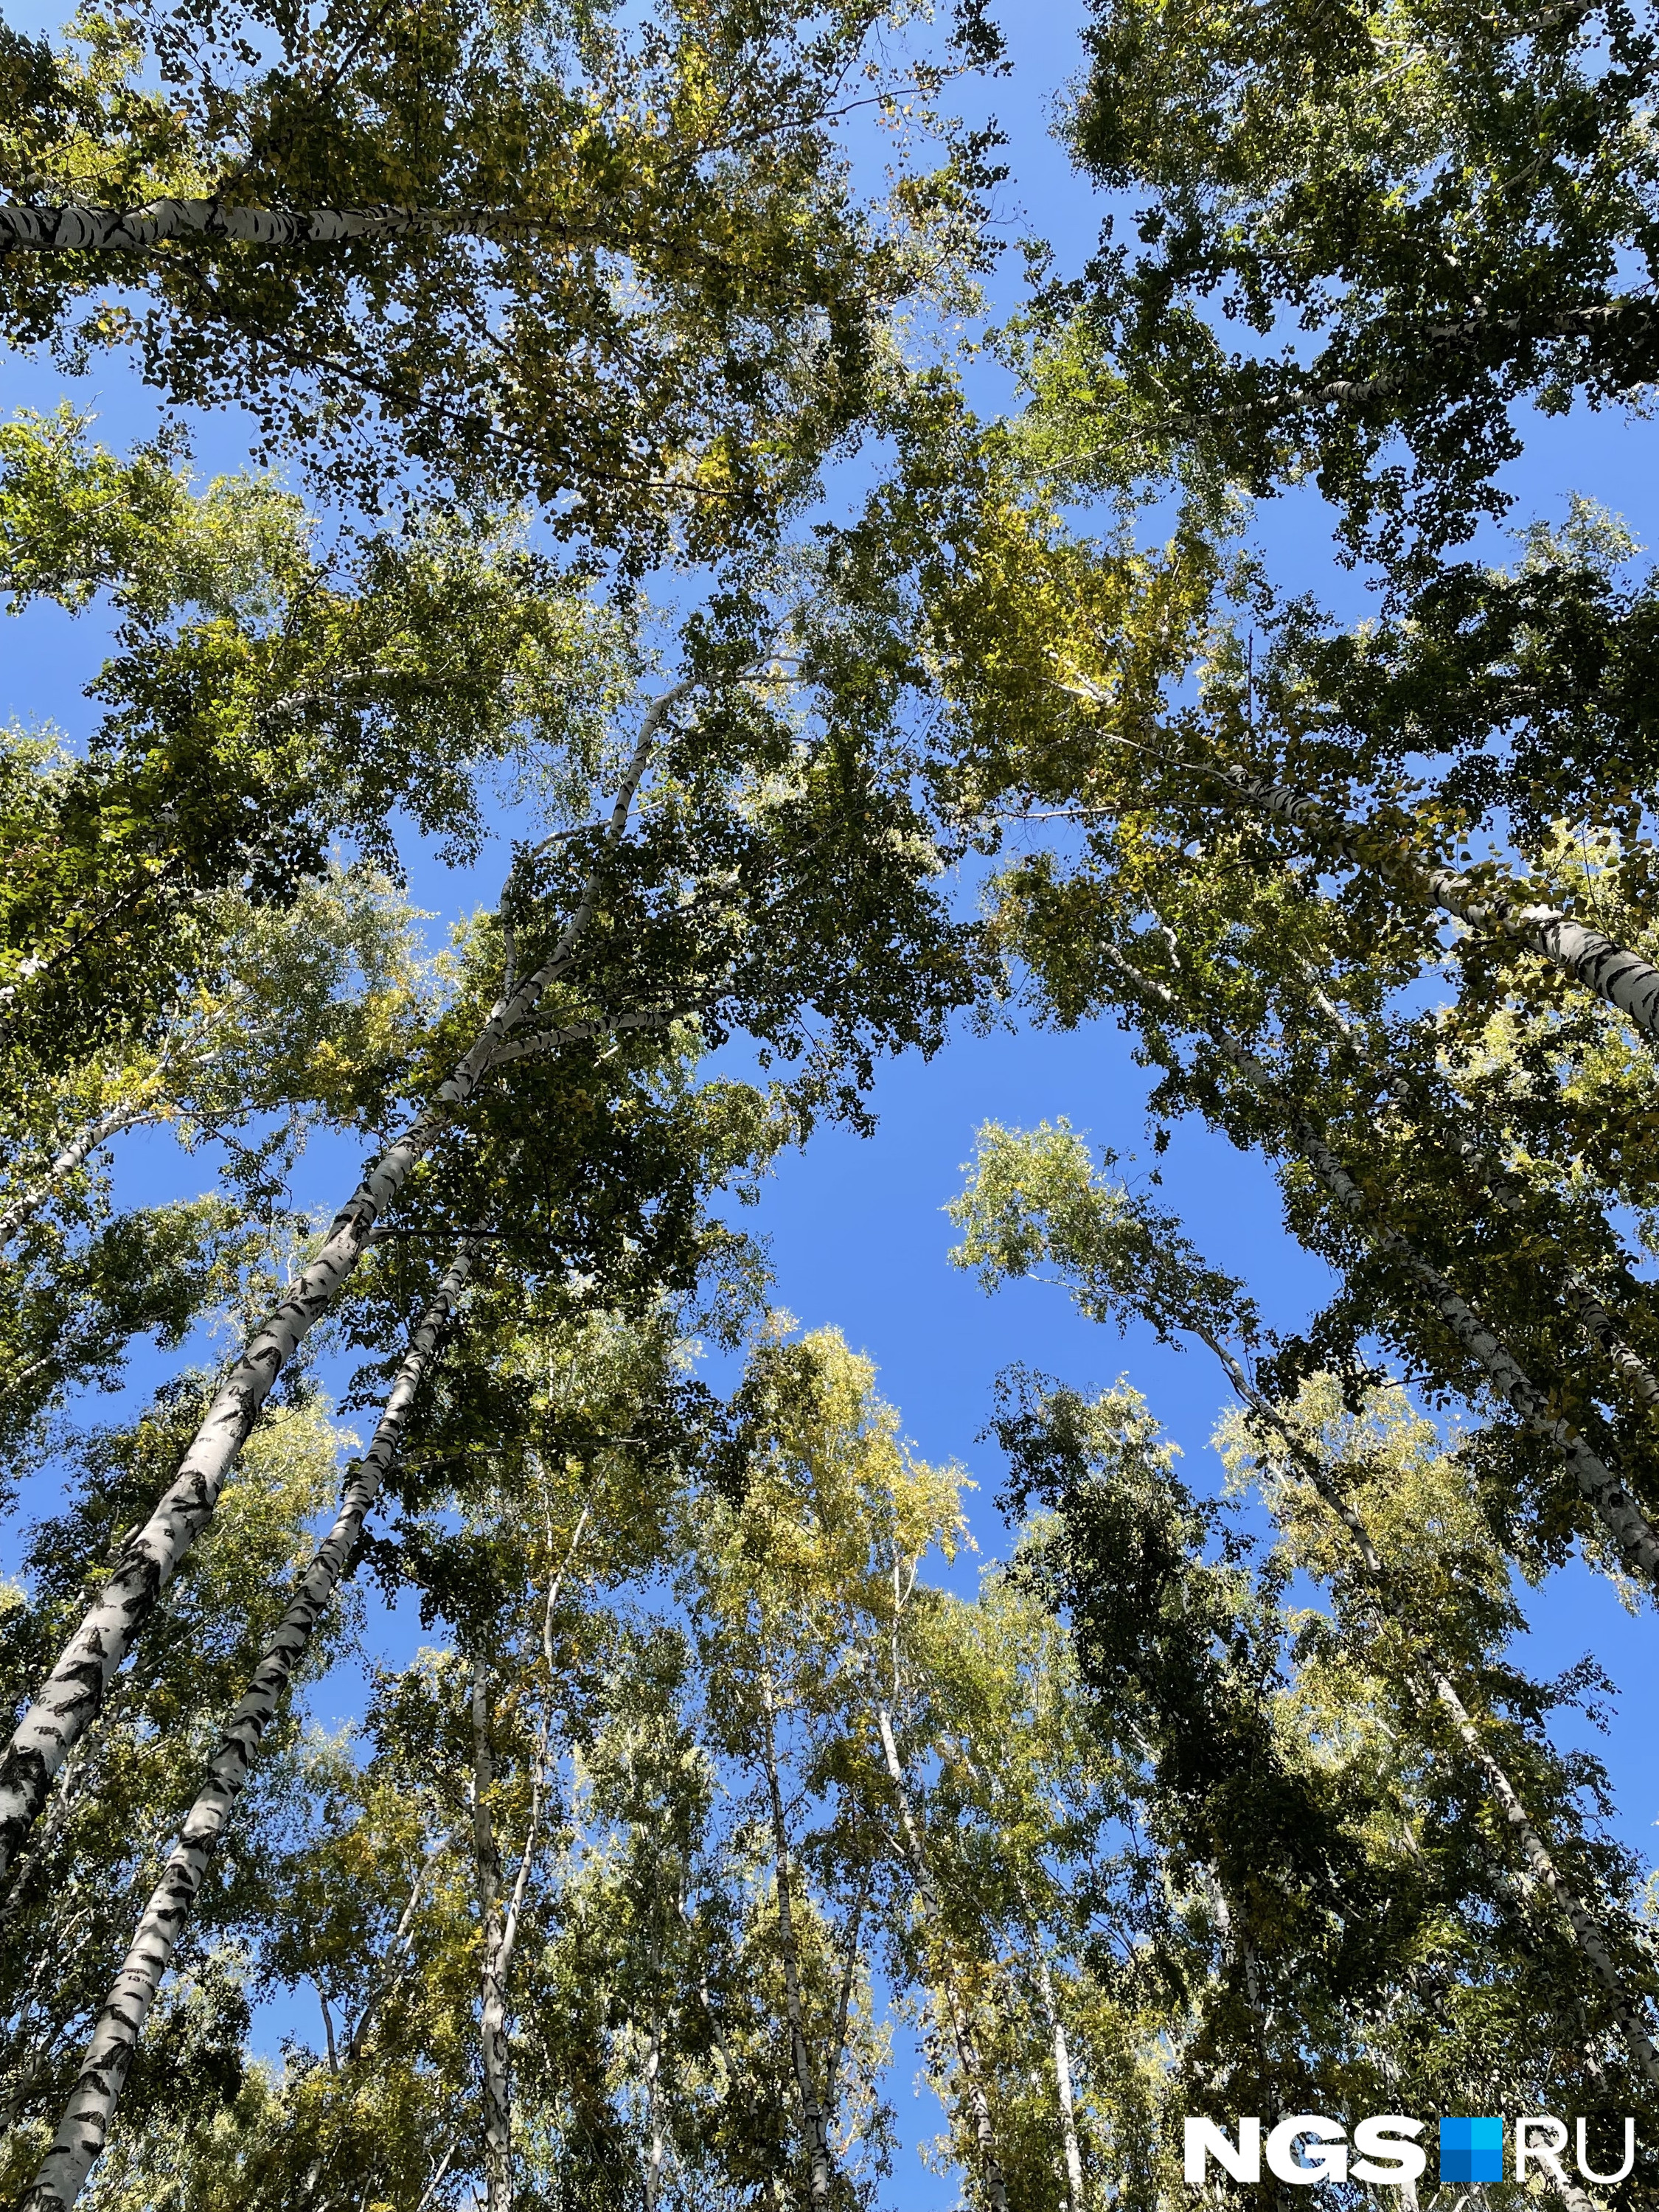 Глядя на небо из березового леса на участке сибиряка, понимаешь, почему он не захотел его вырубать, как это делали некоторые его соседи, купившие участки с деревьями